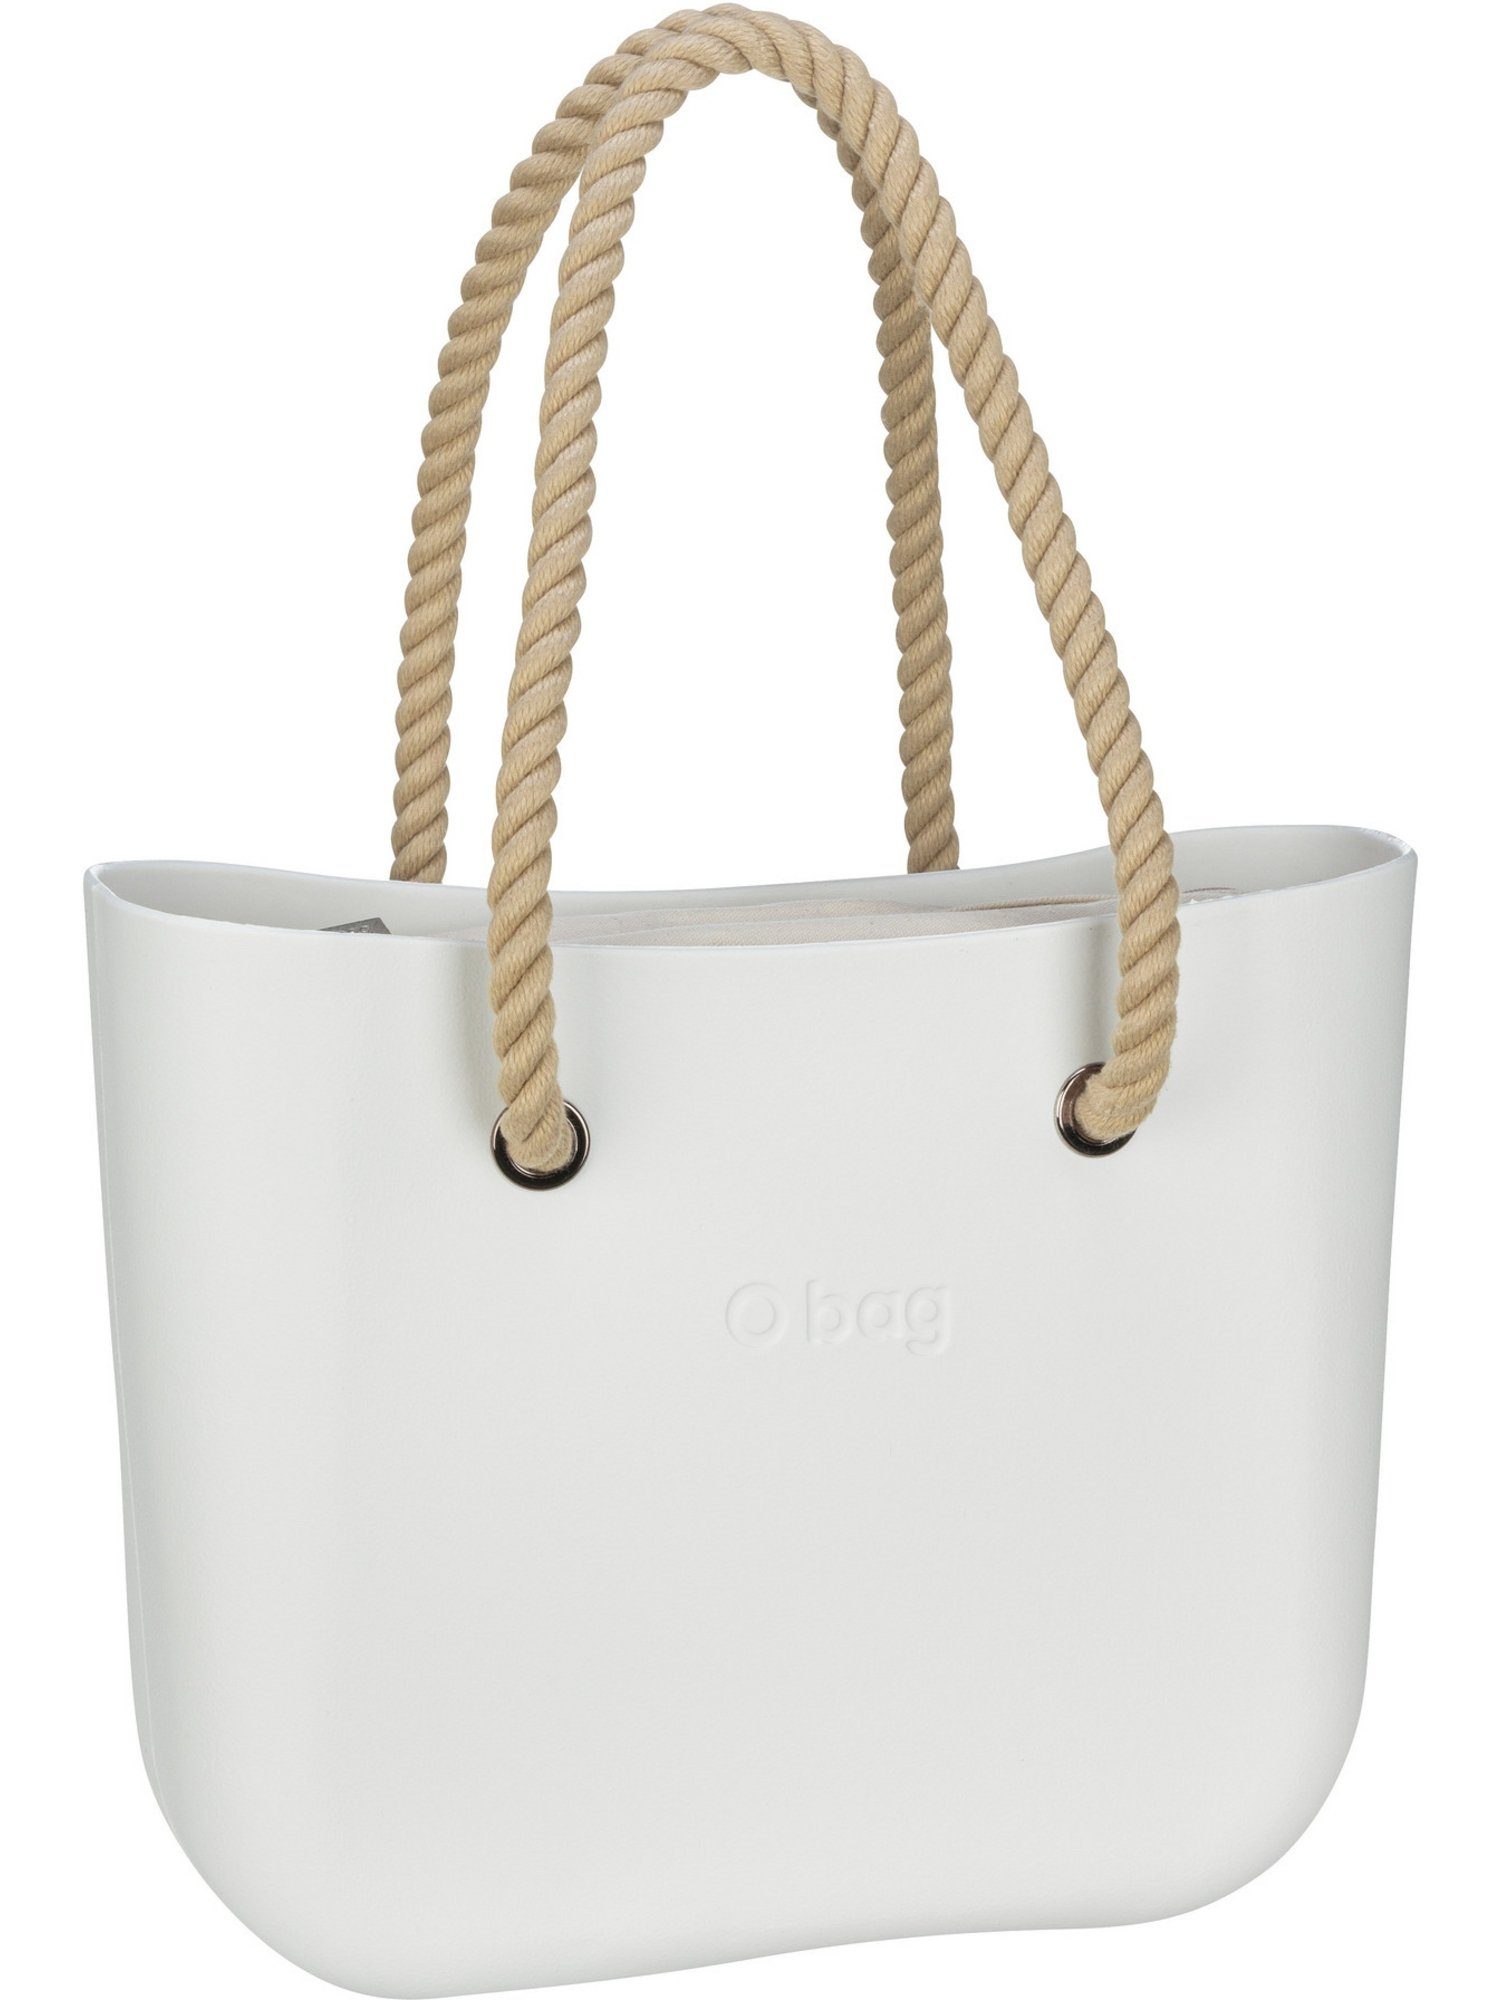 O bag Handtasche »O bag 500«, Shopper, Aus leichtem Kunststoff gefertigt  online kaufen | OTTO